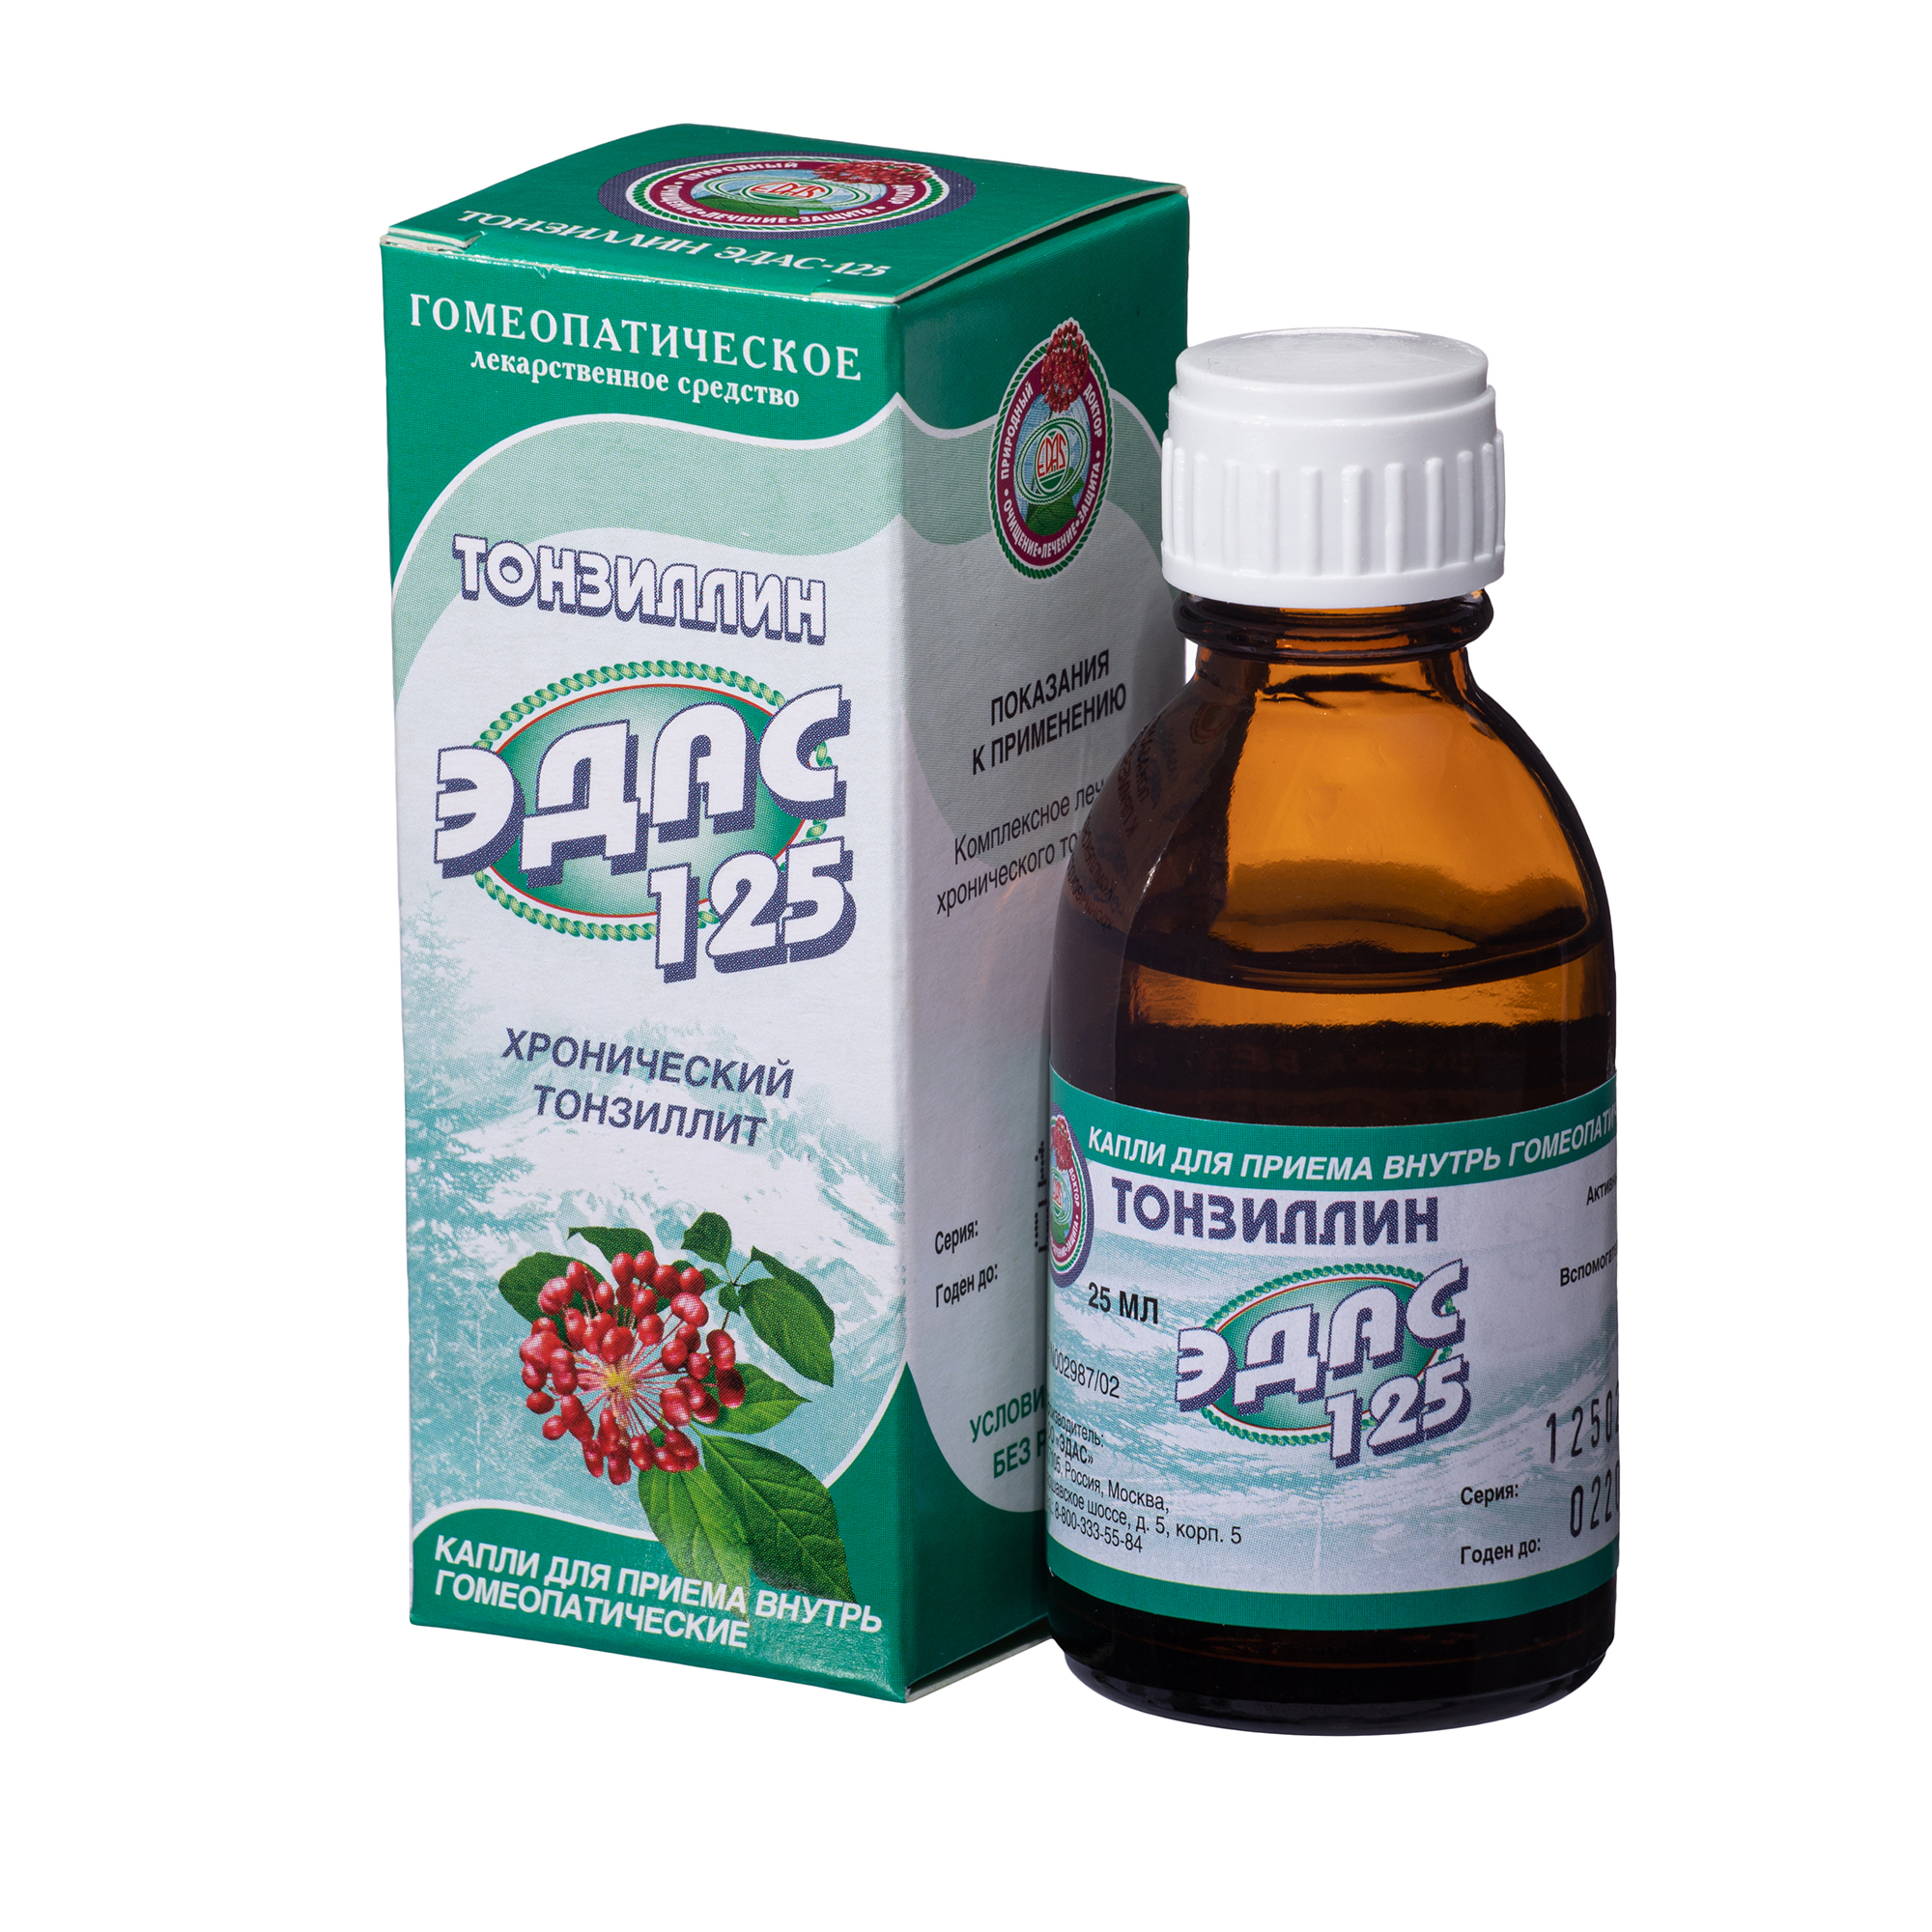 Тонзиллин Эдас-125, для лечения хронического тонзиллита, капли гом. 25 мл пассифлора эдас 111 капли 25 мл